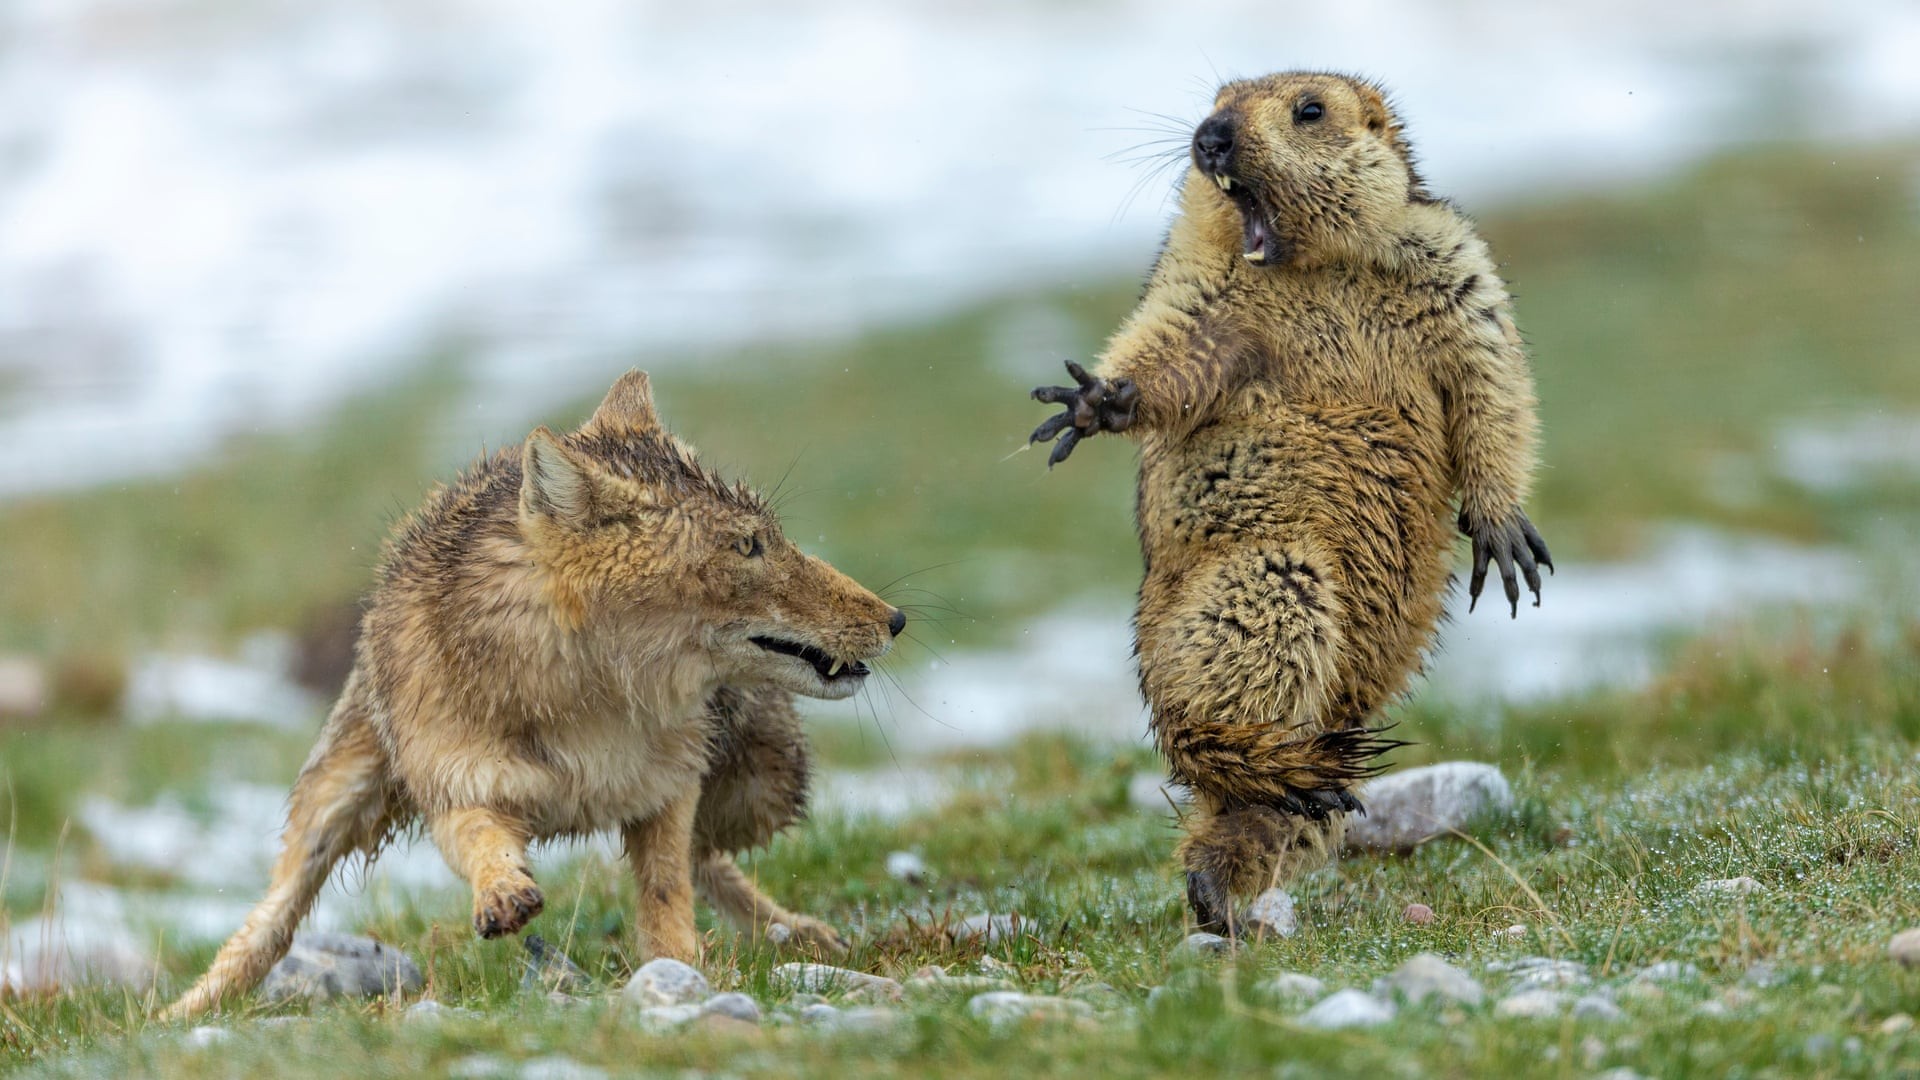 Uma das fotos vencedoras mostra uma marmota sendo assustada (Foto: Bao Yongqing)